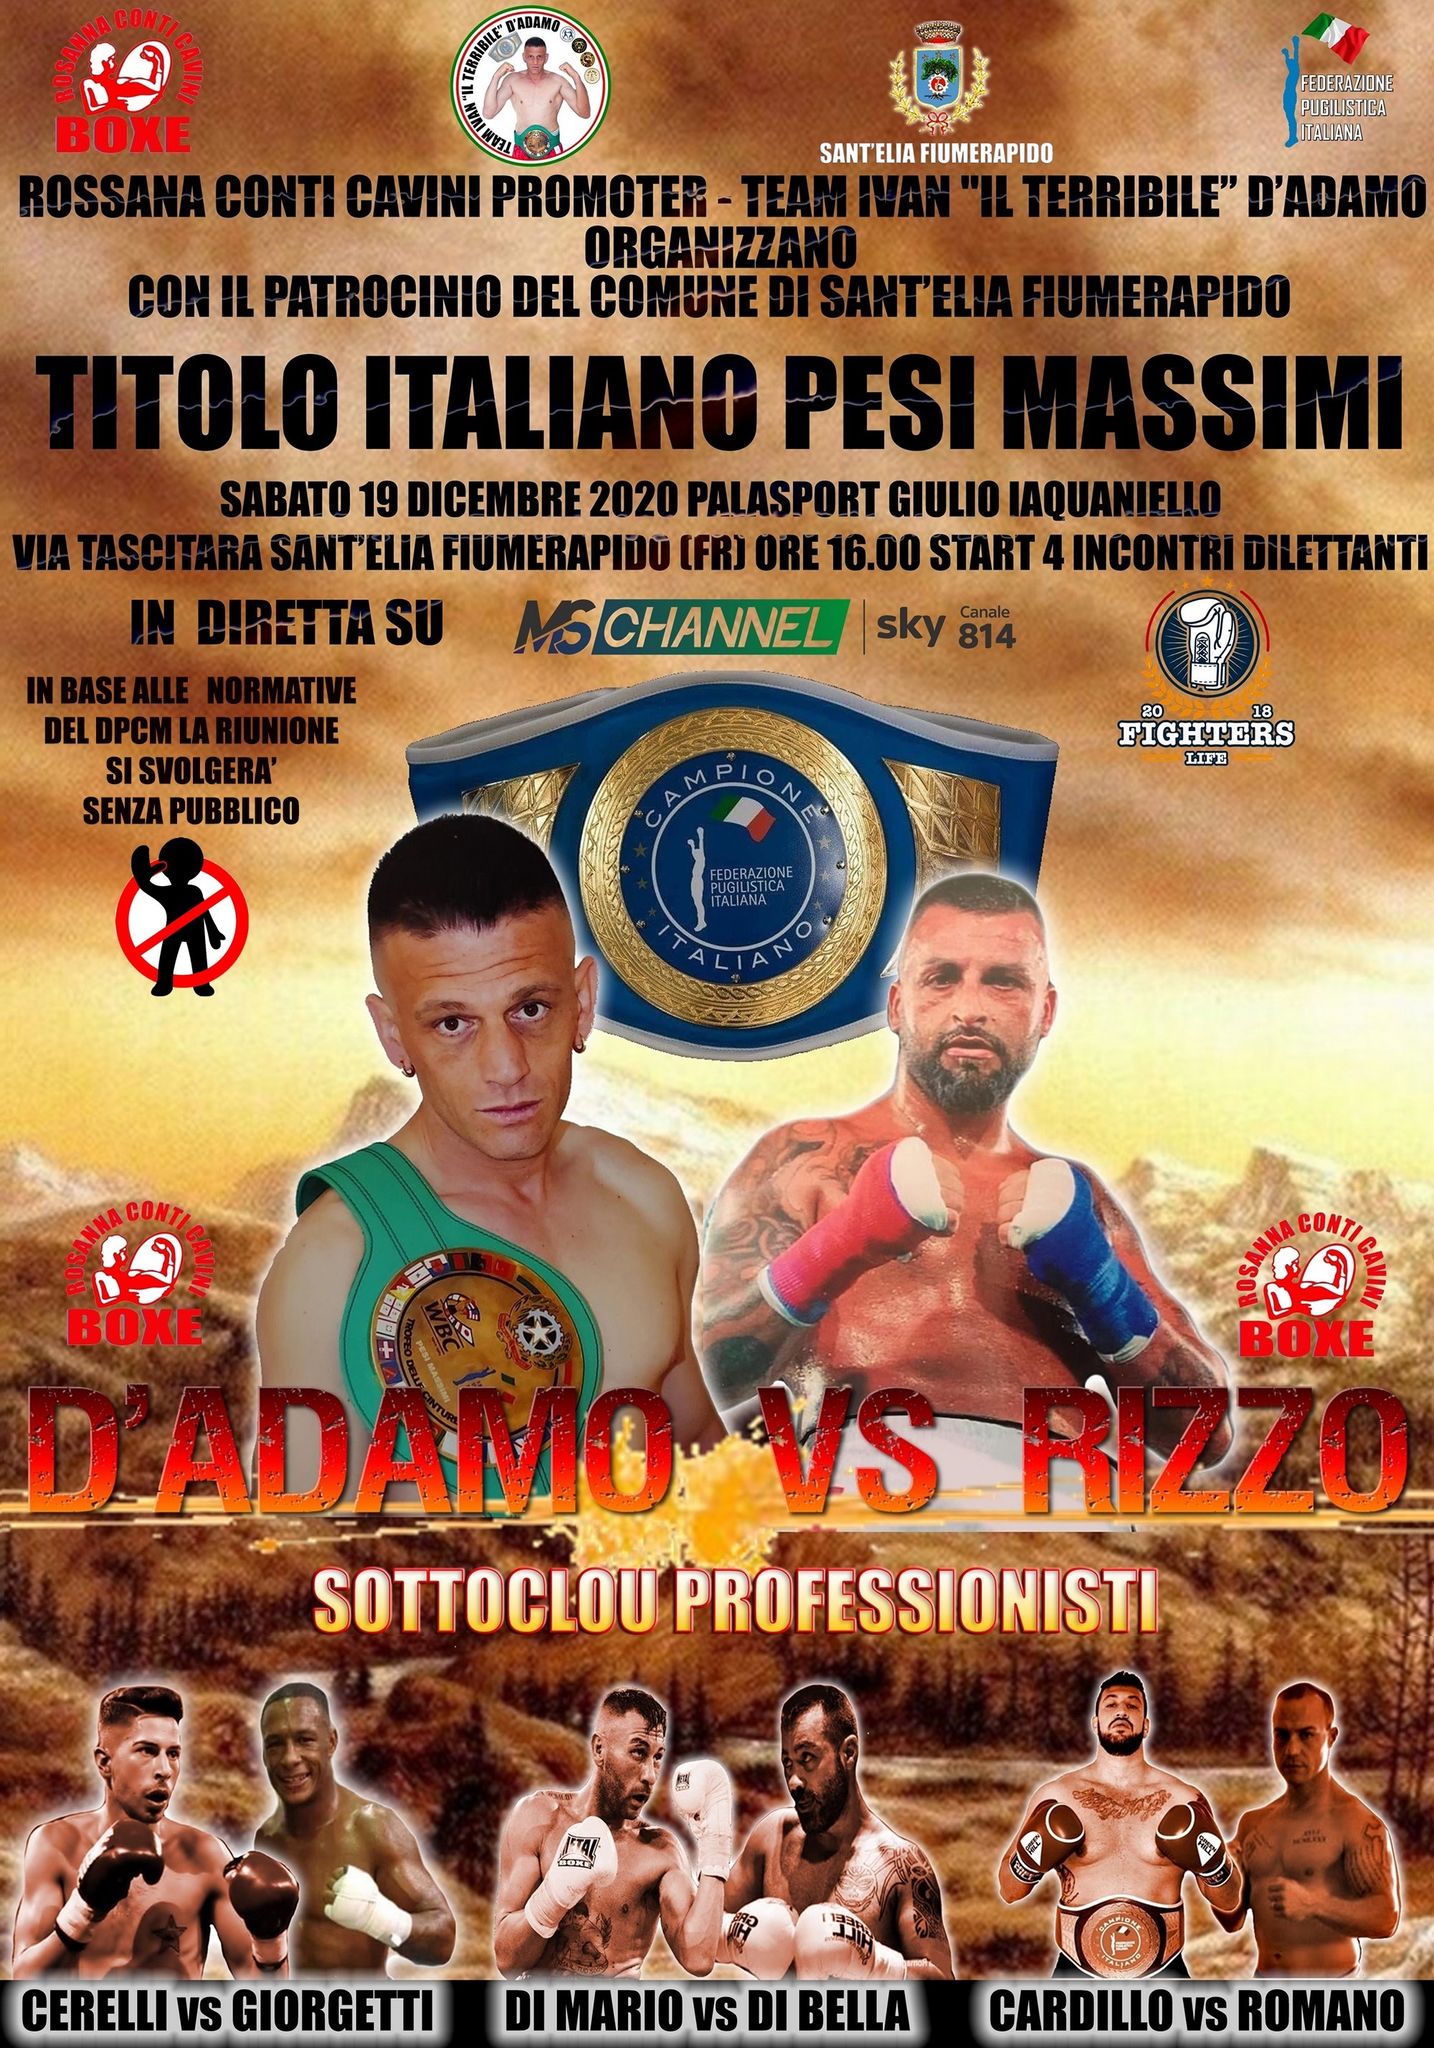 Il 19 Dicembre a Cassino D'Adamo vs Rizzo per il Titolo Italiano Massimi - Official Poster 